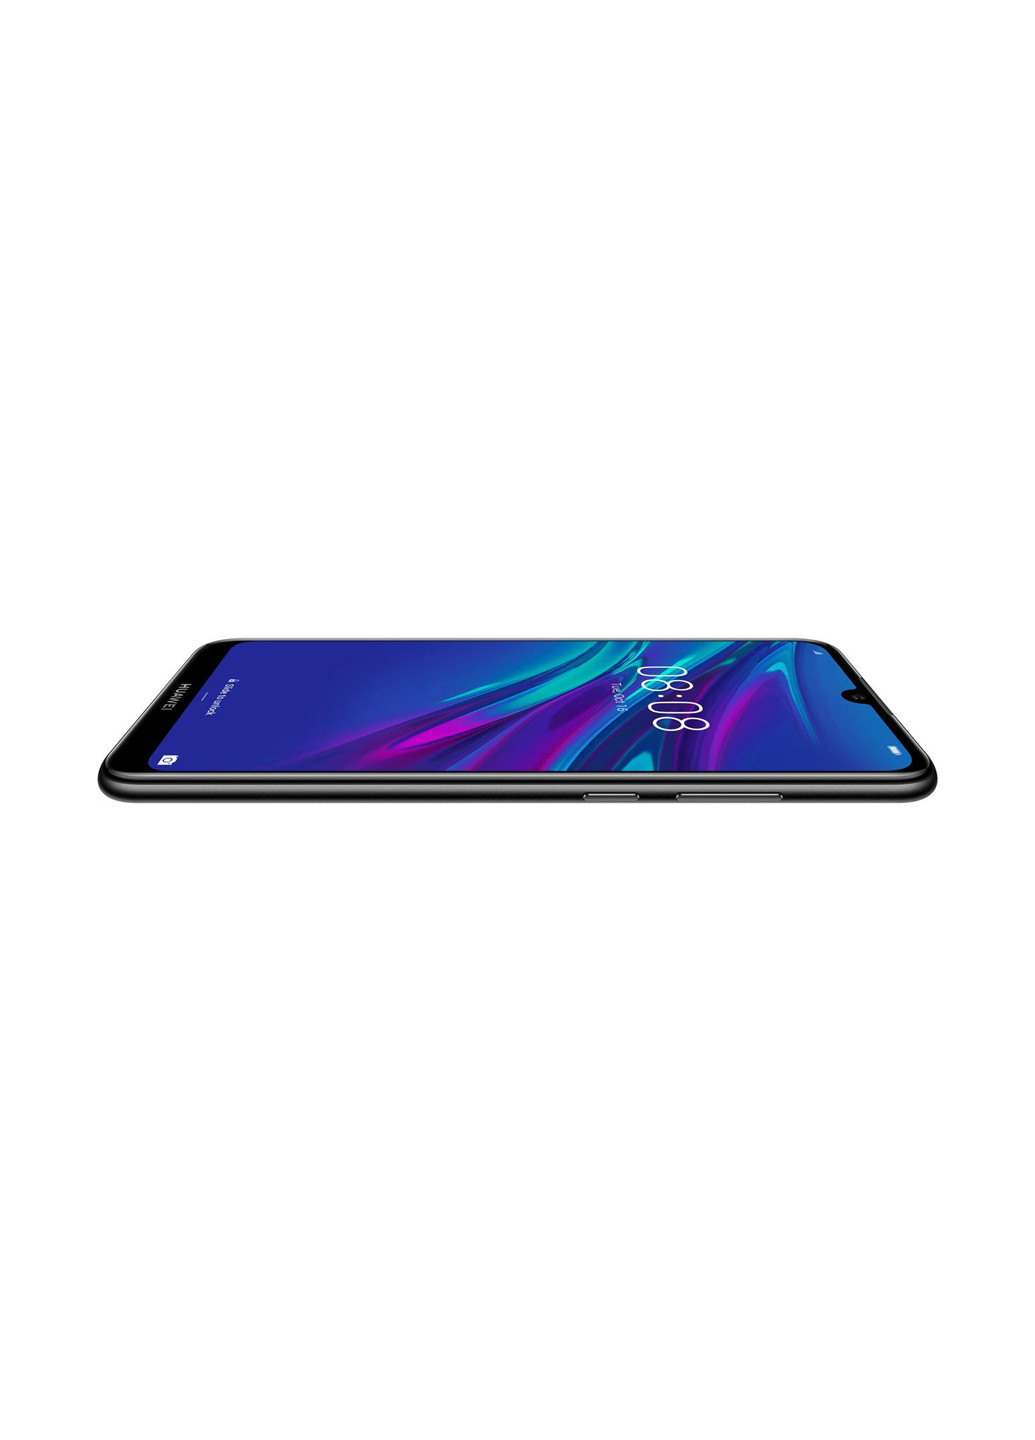 Смартфон Huawei y6 2019 2/32gb midnight black (mrd-lх1) (130359123)